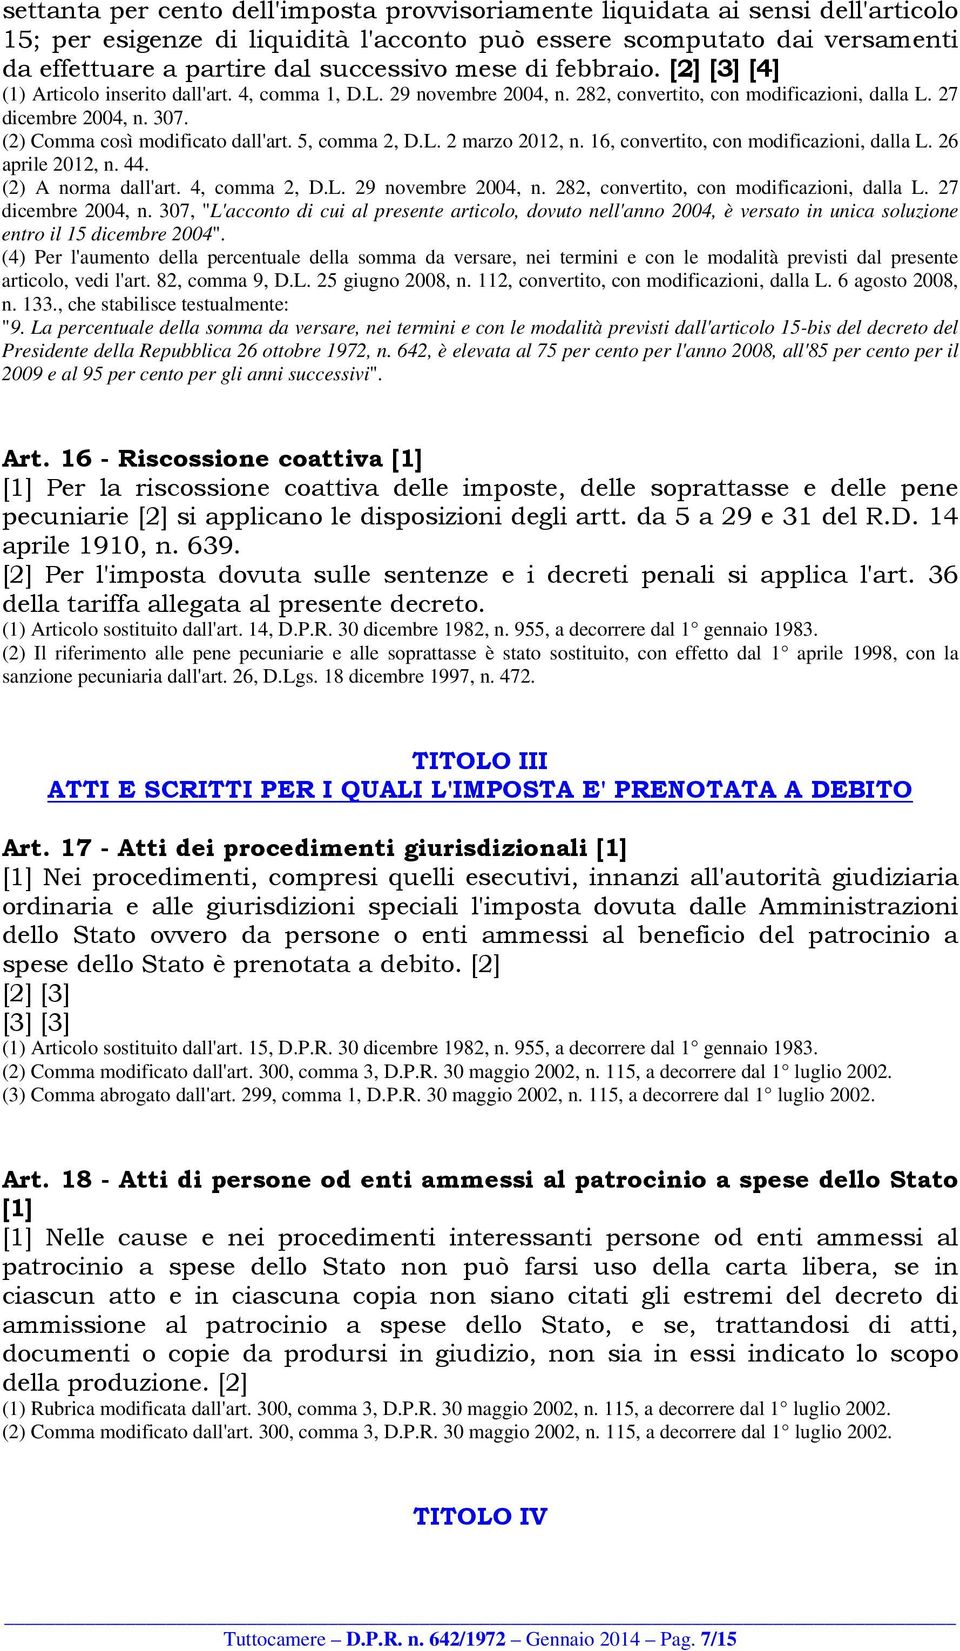 (2) Comma così modificato dall'art. 5, comma 2, D.L. 2 marzo 2012, n. 16, convertito, con modificazioni, dalla L. 26 aprile 2012, n. 44. (2) A norma dall'art. 4, comma 2, D.L. 29 novembre 2004, n.